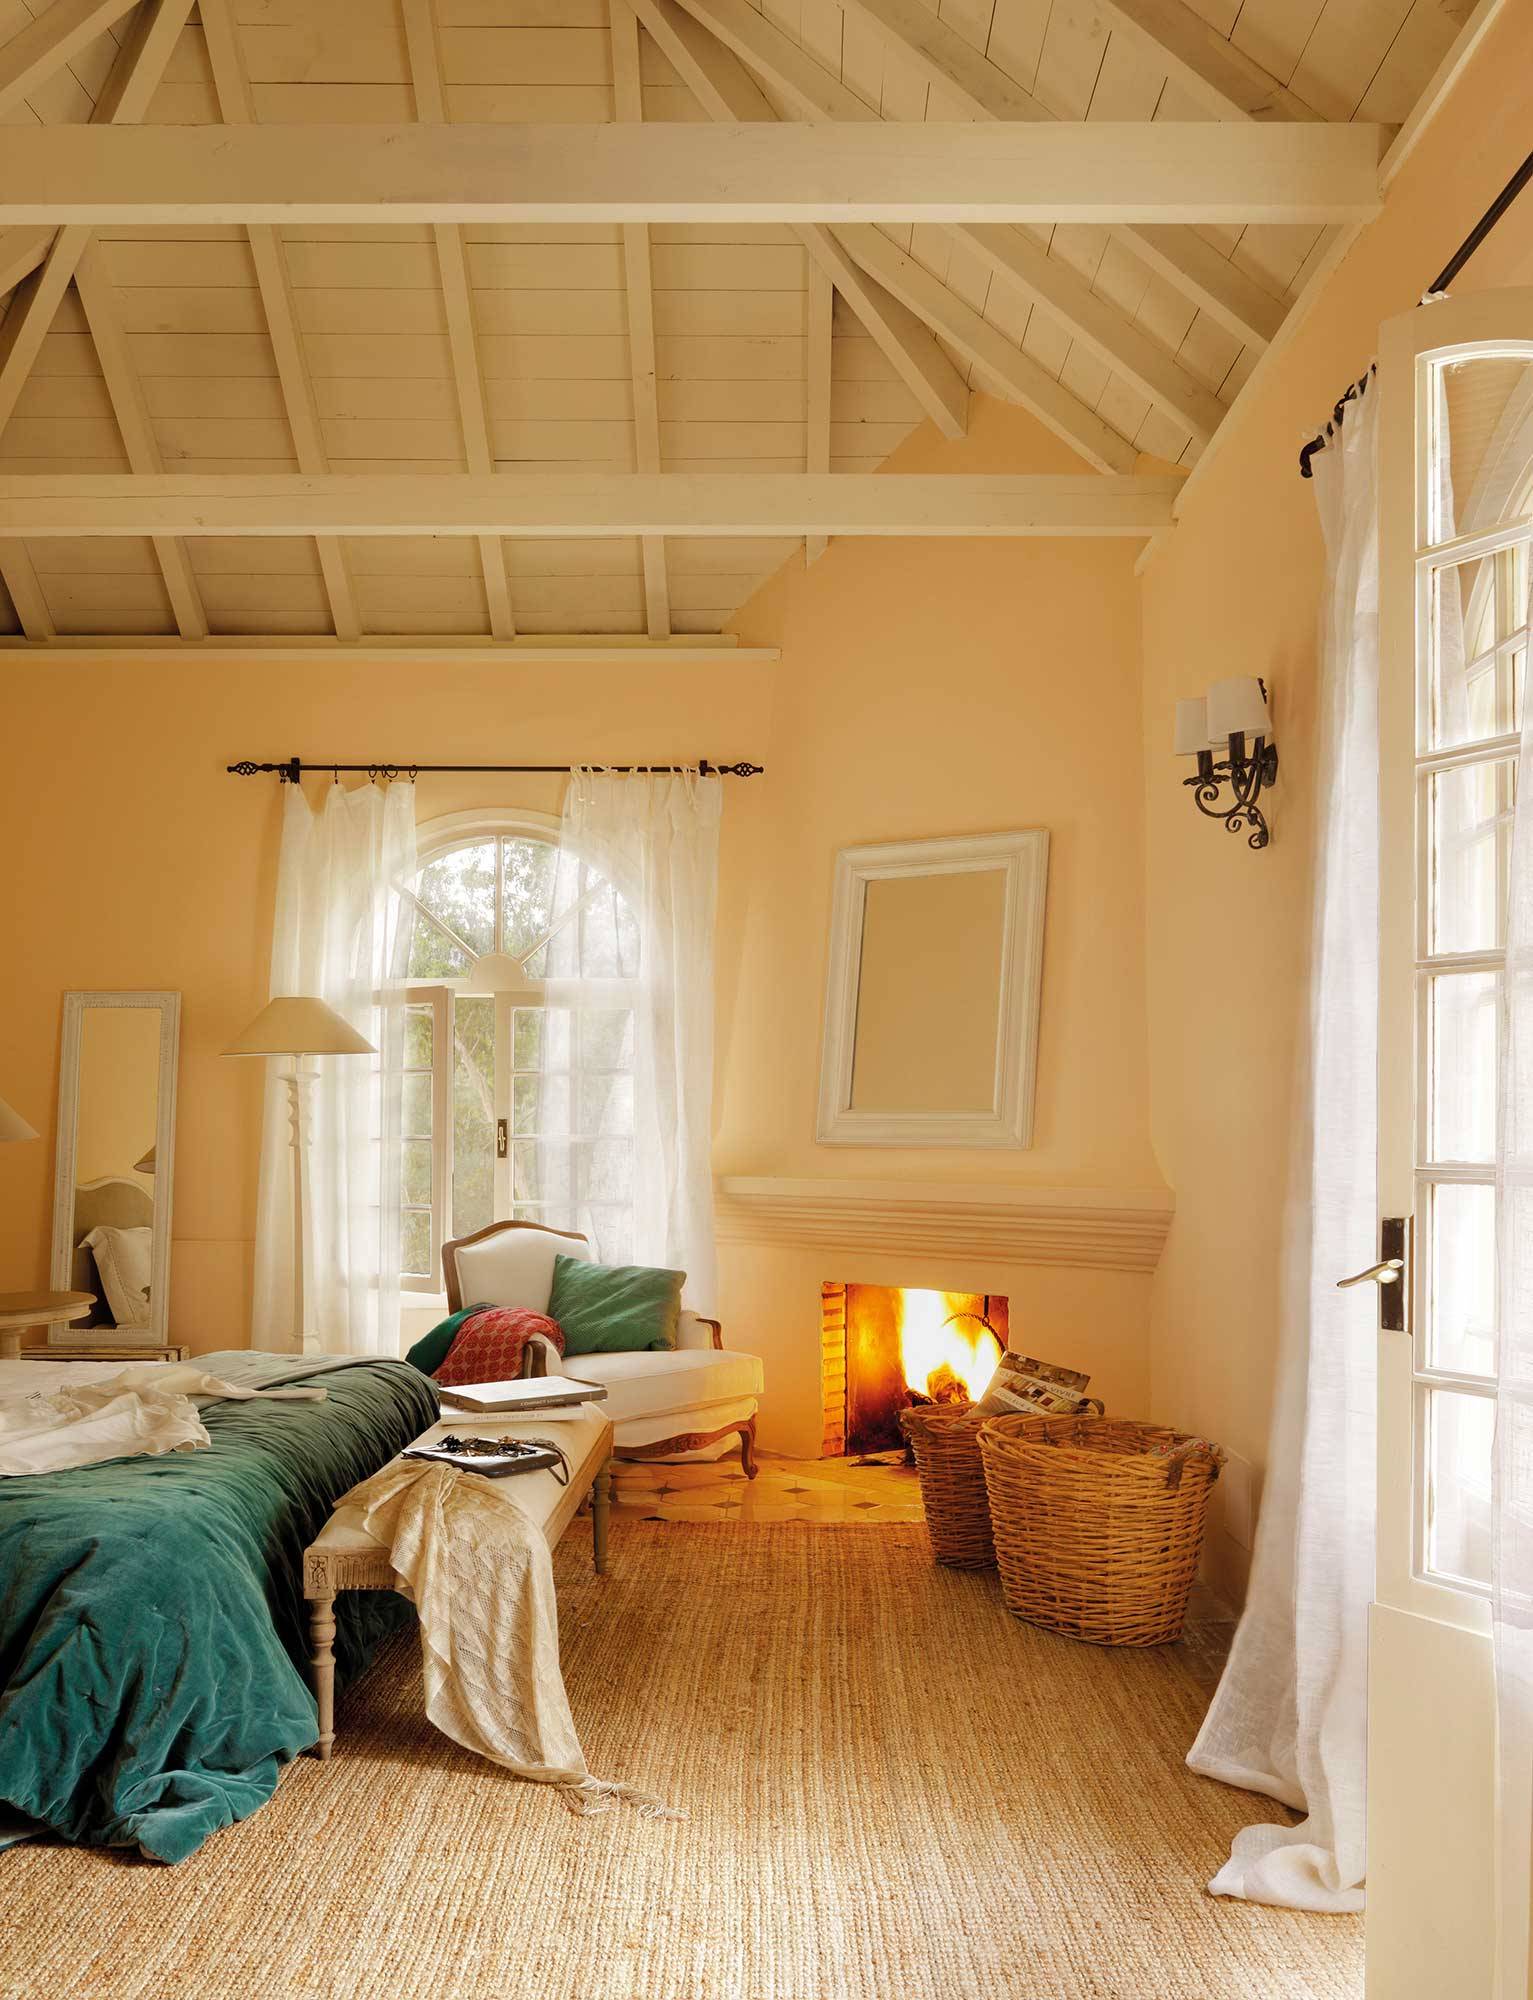 Dormitorio invernal con alfombra de fibras y chimenea encendida.